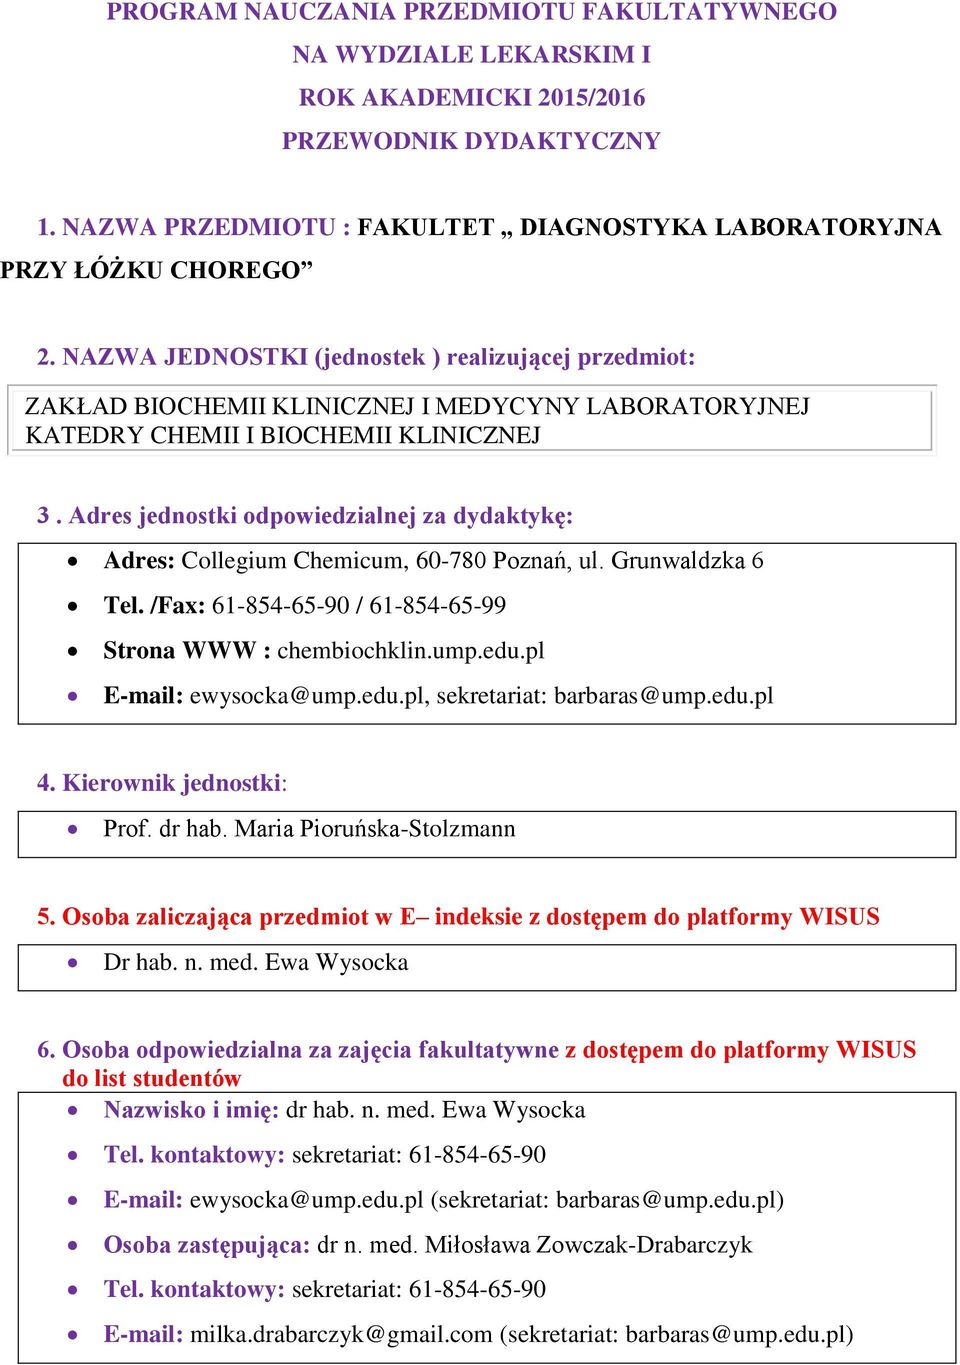 Adres jednostki odpowiedzialnej za dydaktykę: Adres: Collegium Chemicum, 60-780 Poznań, ul. Grunwaldzka 6 Tel. /Fax: 61-854-65-90 / 61-854-65-99 Strona WWW : chembiochklin.ump.edu.